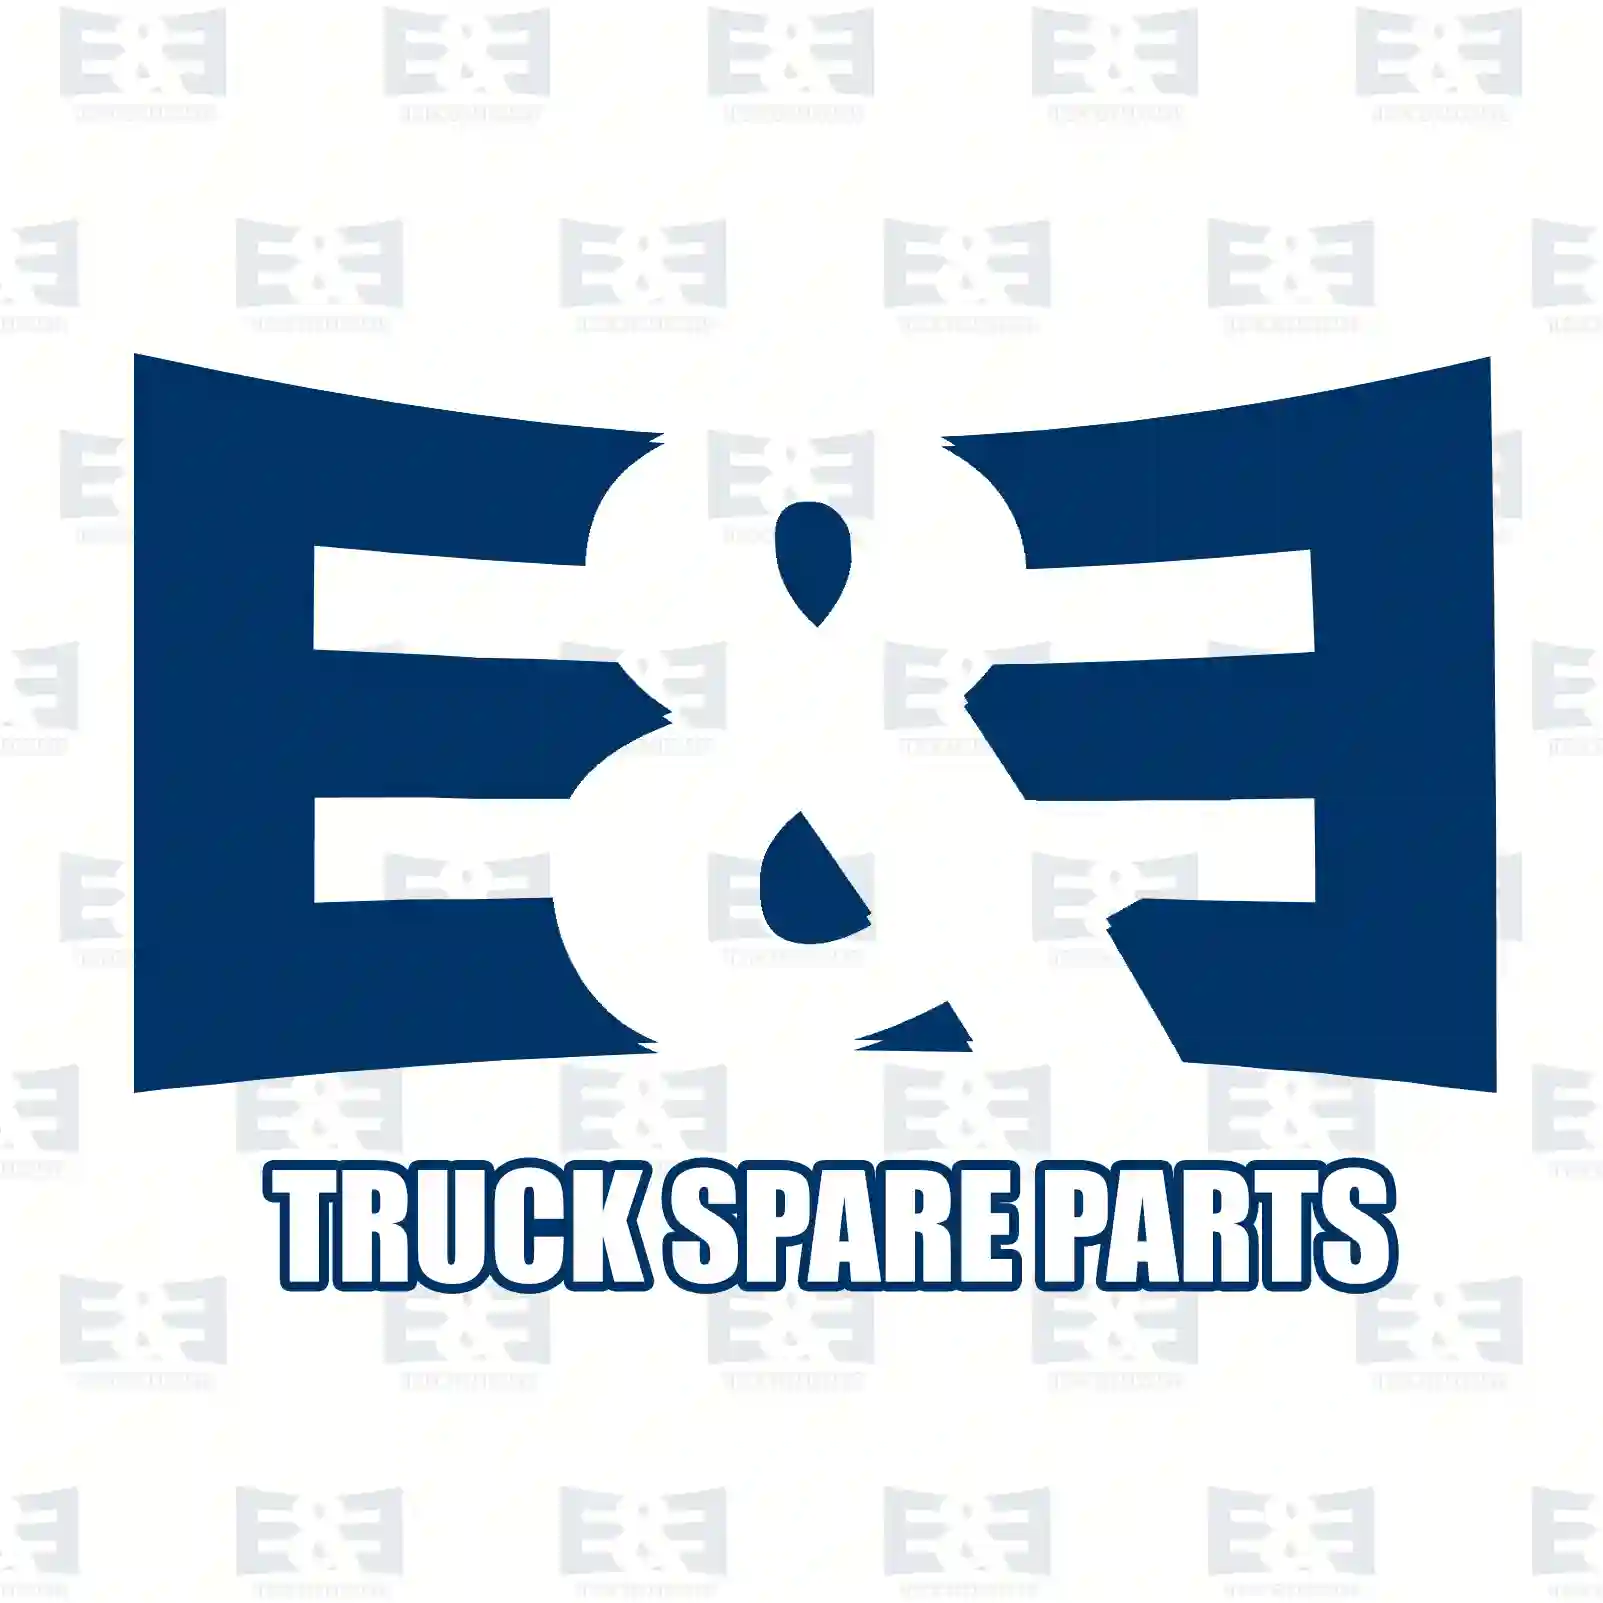 Crankshaft, without bearings, 2E2209235, 51021017498, 4220300801, 4220302901, 4220303001, 4420300301, 4420300401, 4420300801, 4420300901, 4420301201 ||  2E2209235 E&E Truck Spare Parts | Truck Spare Parts, Auotomotive Spare Parts Crankshaft, without bearings, 2E2209235, 51021017498, 4220300801, 4220302901, 4220303001, 4420300301, 4420300401, 4420300801, 4420300901, 4420301201 ||  2E2209235 E&E Truck Spare Parts | Truck Spare Parts, Auotomotive Spare Parts